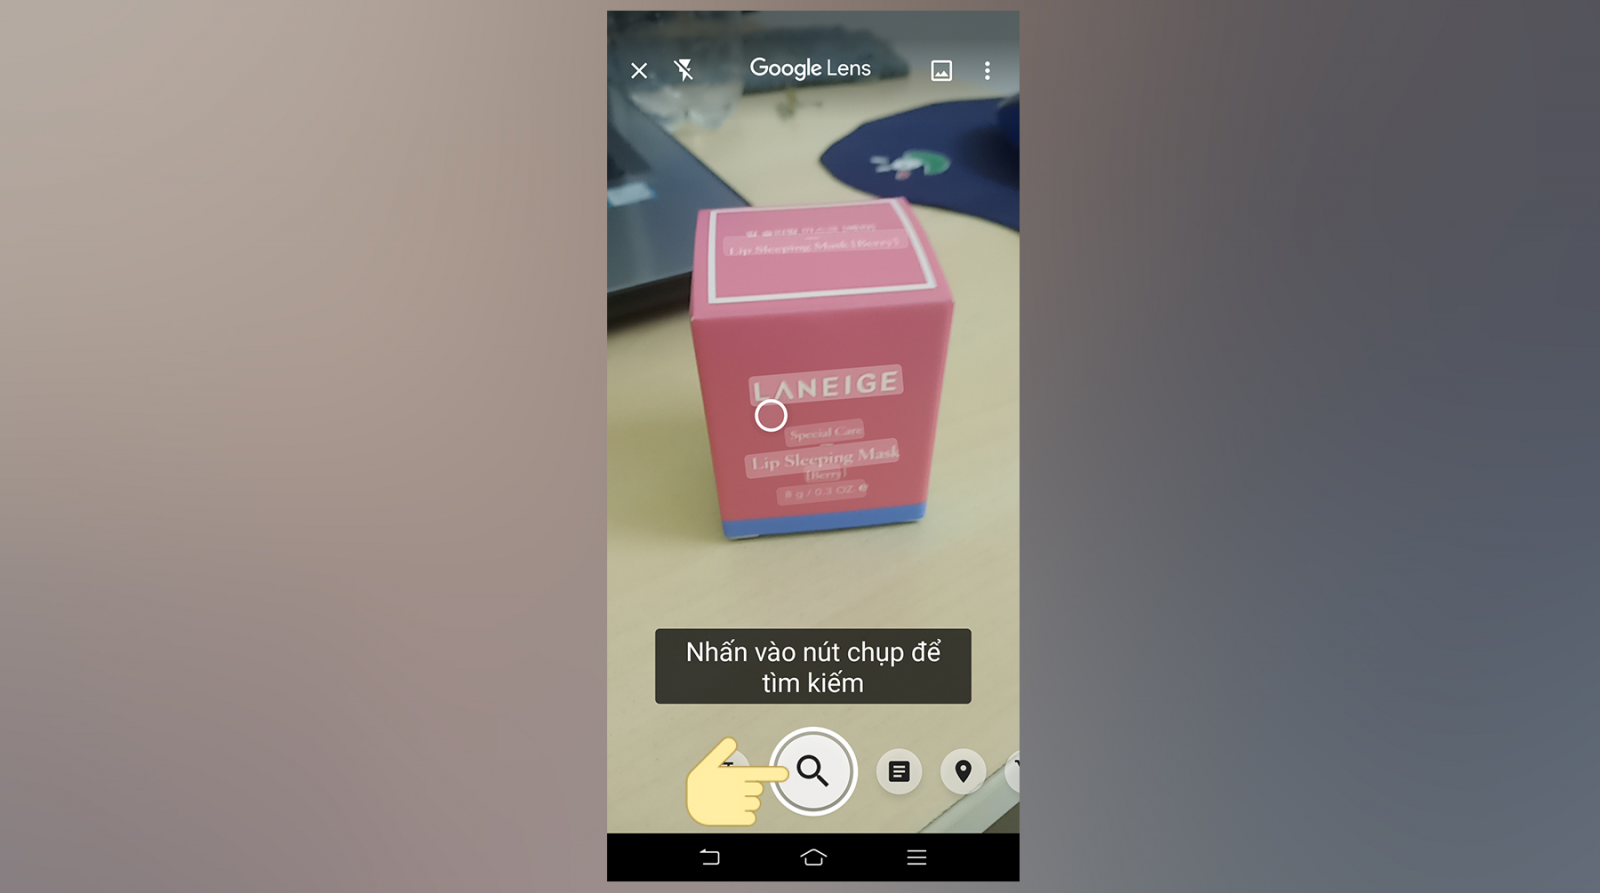 Google Ống Kính là 1 dụng cụ khiến cho bạn mò mẫm tìm tòi vấn đề hình hình họa nhanh gọn bên trên Smartphone Android